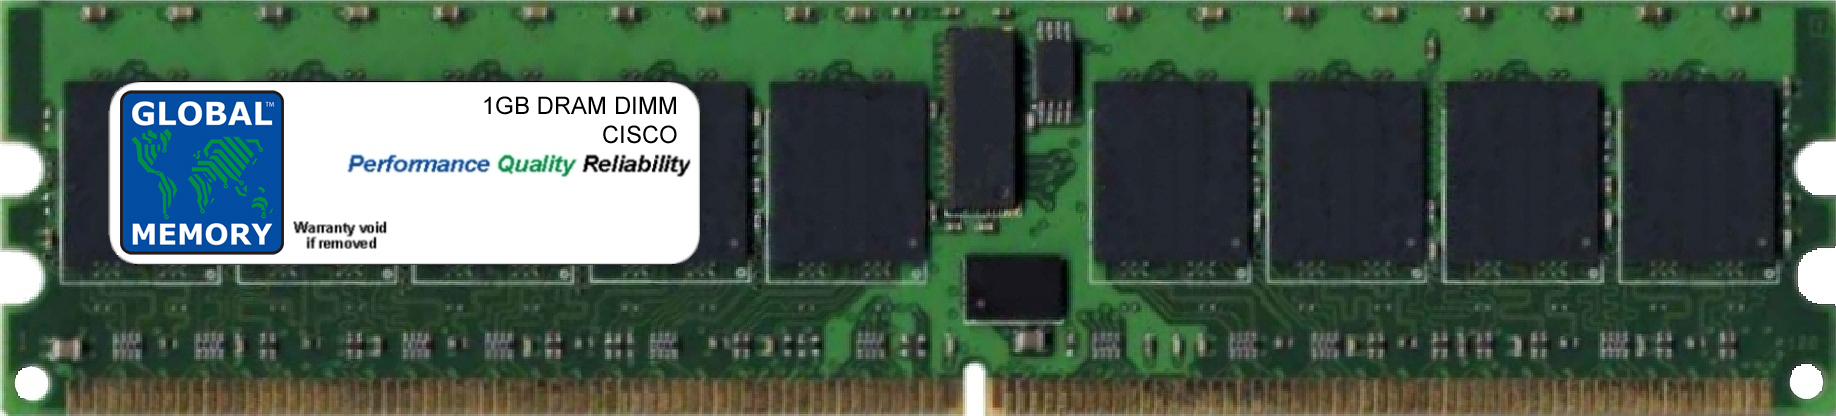 1GB DRAM DIMM MEMORY RAM FOR CISCO MEDIA CONVERGENCE SERVER MCS 7835-H2 (MEM-7835-H2-1GB) - Click Image to Close